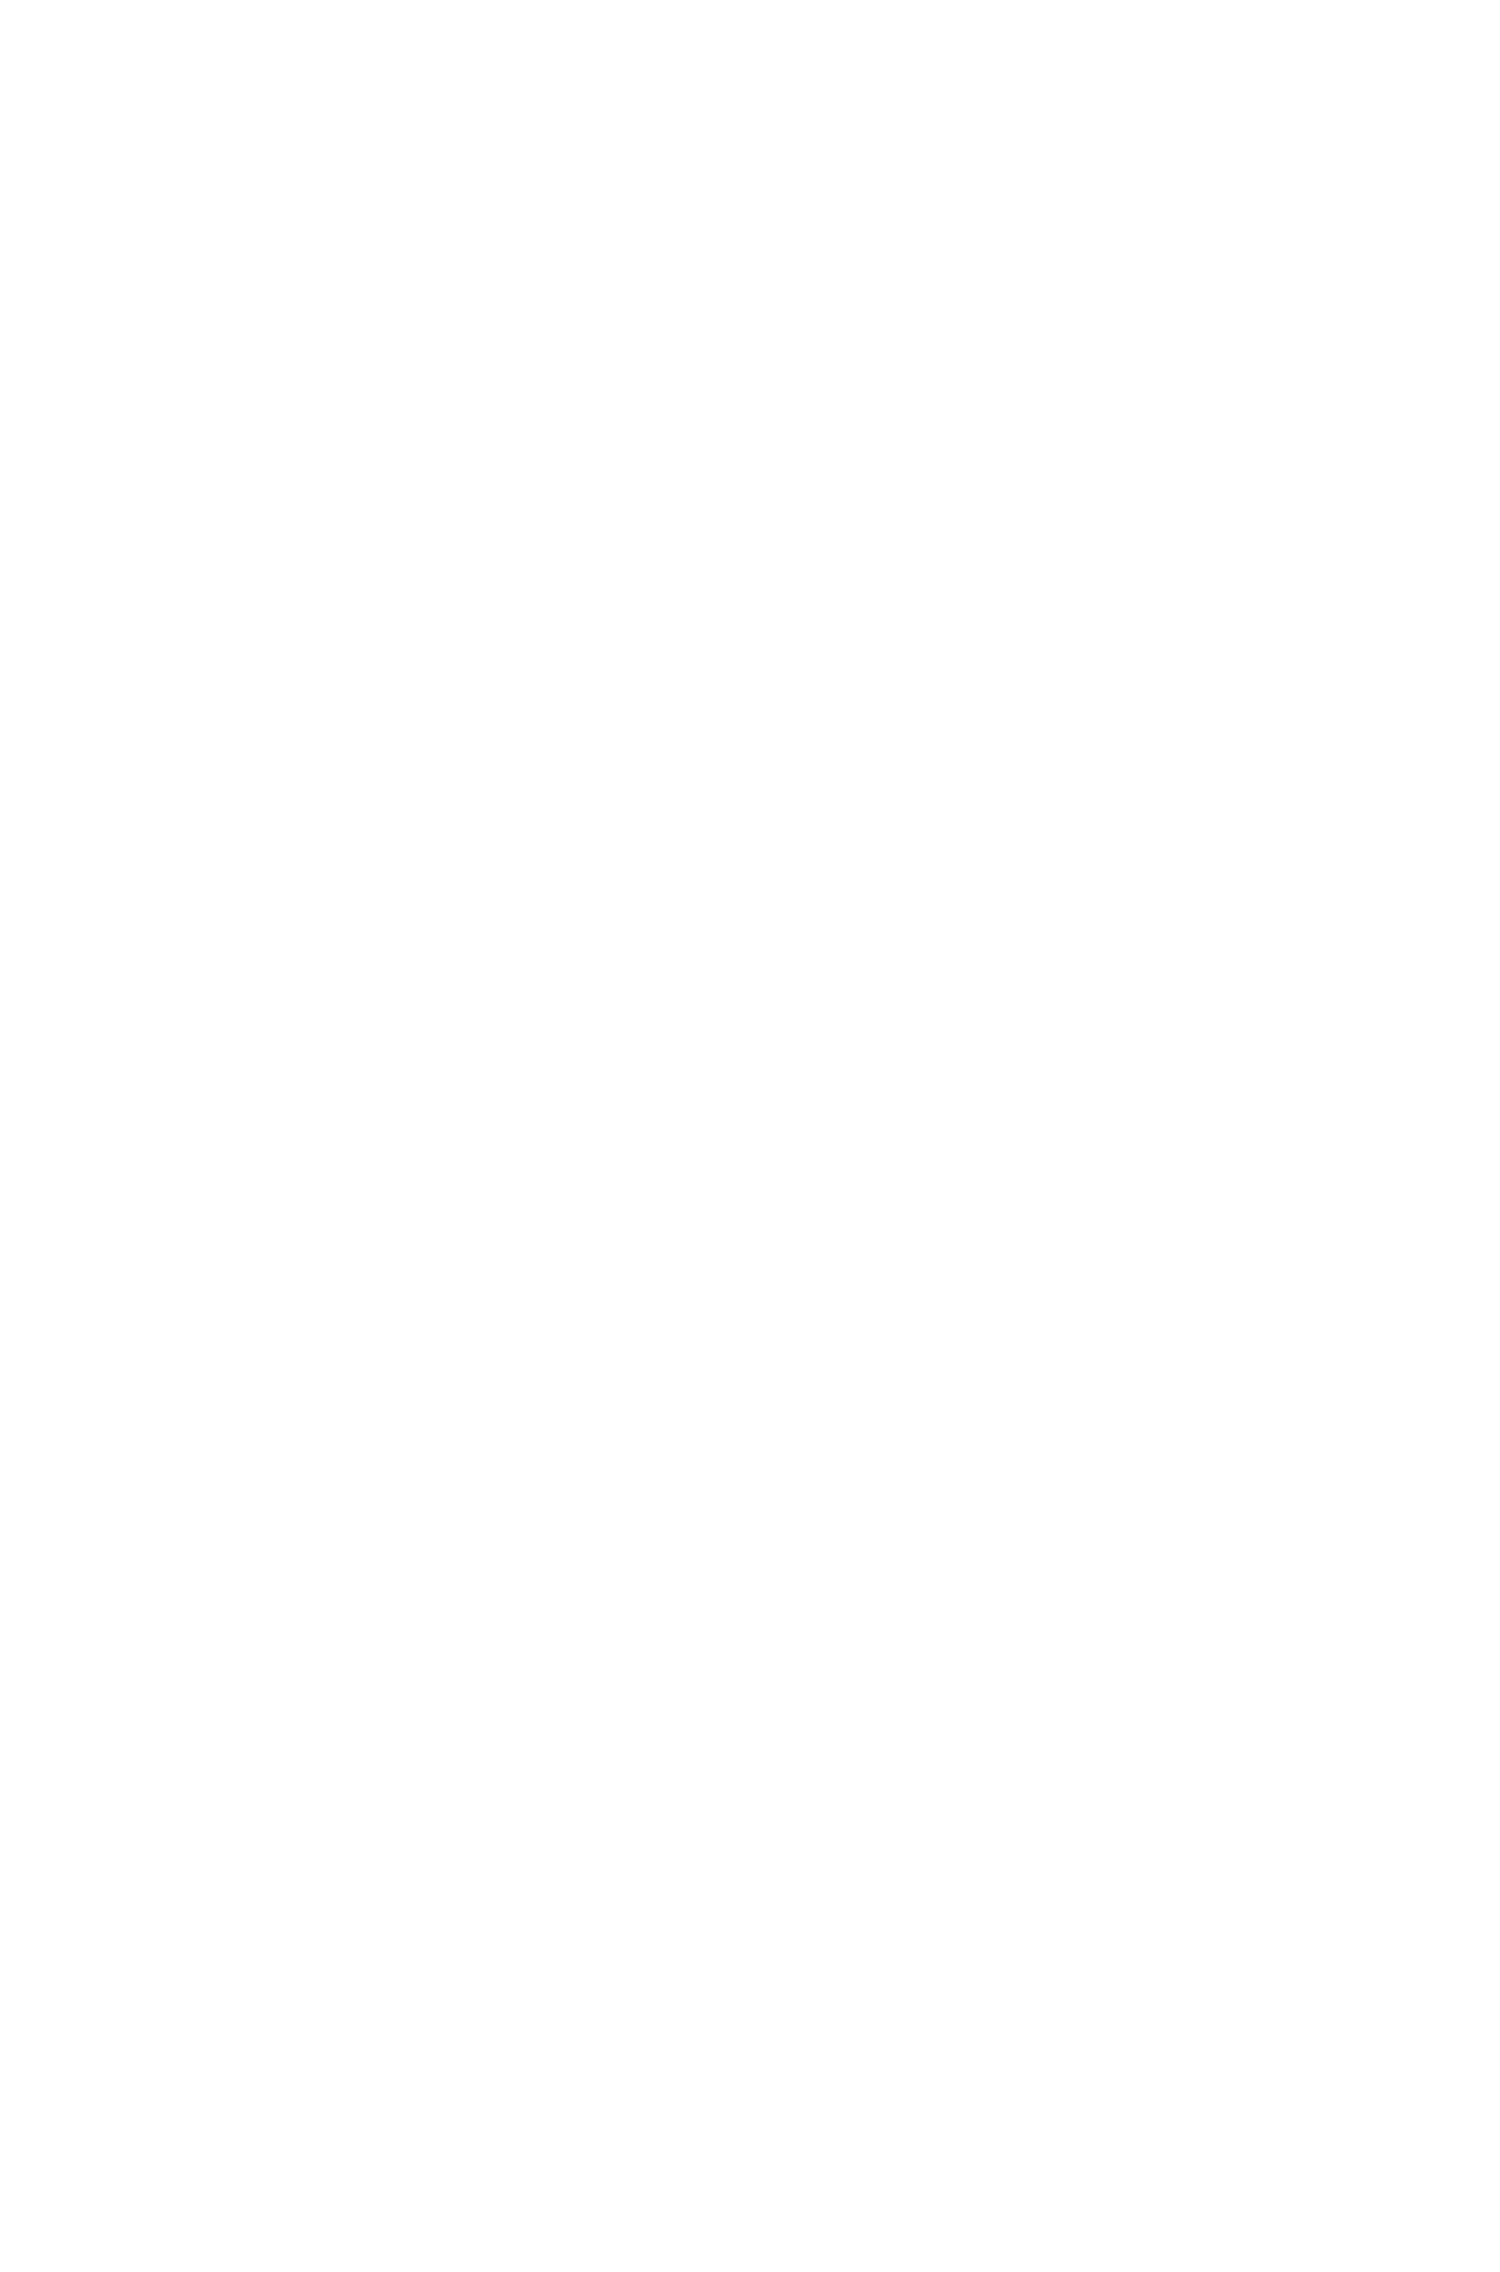 aircooling signature leggings - 09. 01